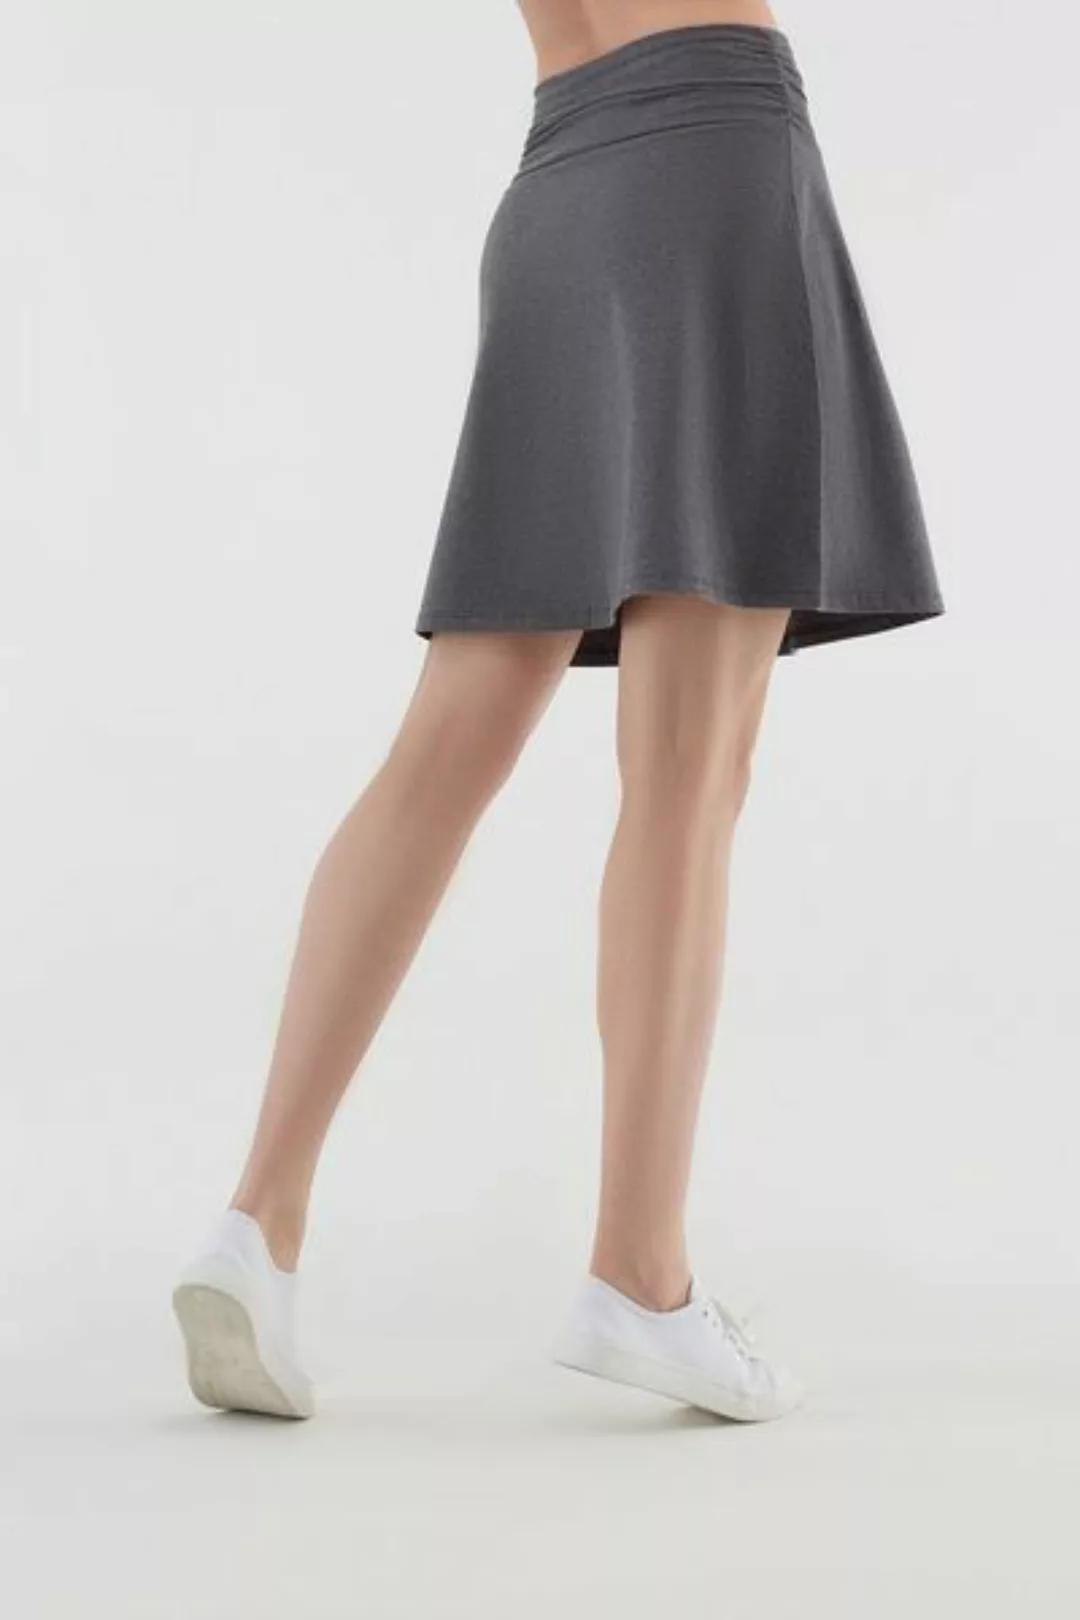 Damen Röcke Lang Bio-baumwolle Rock Kleid günstig online kaufen